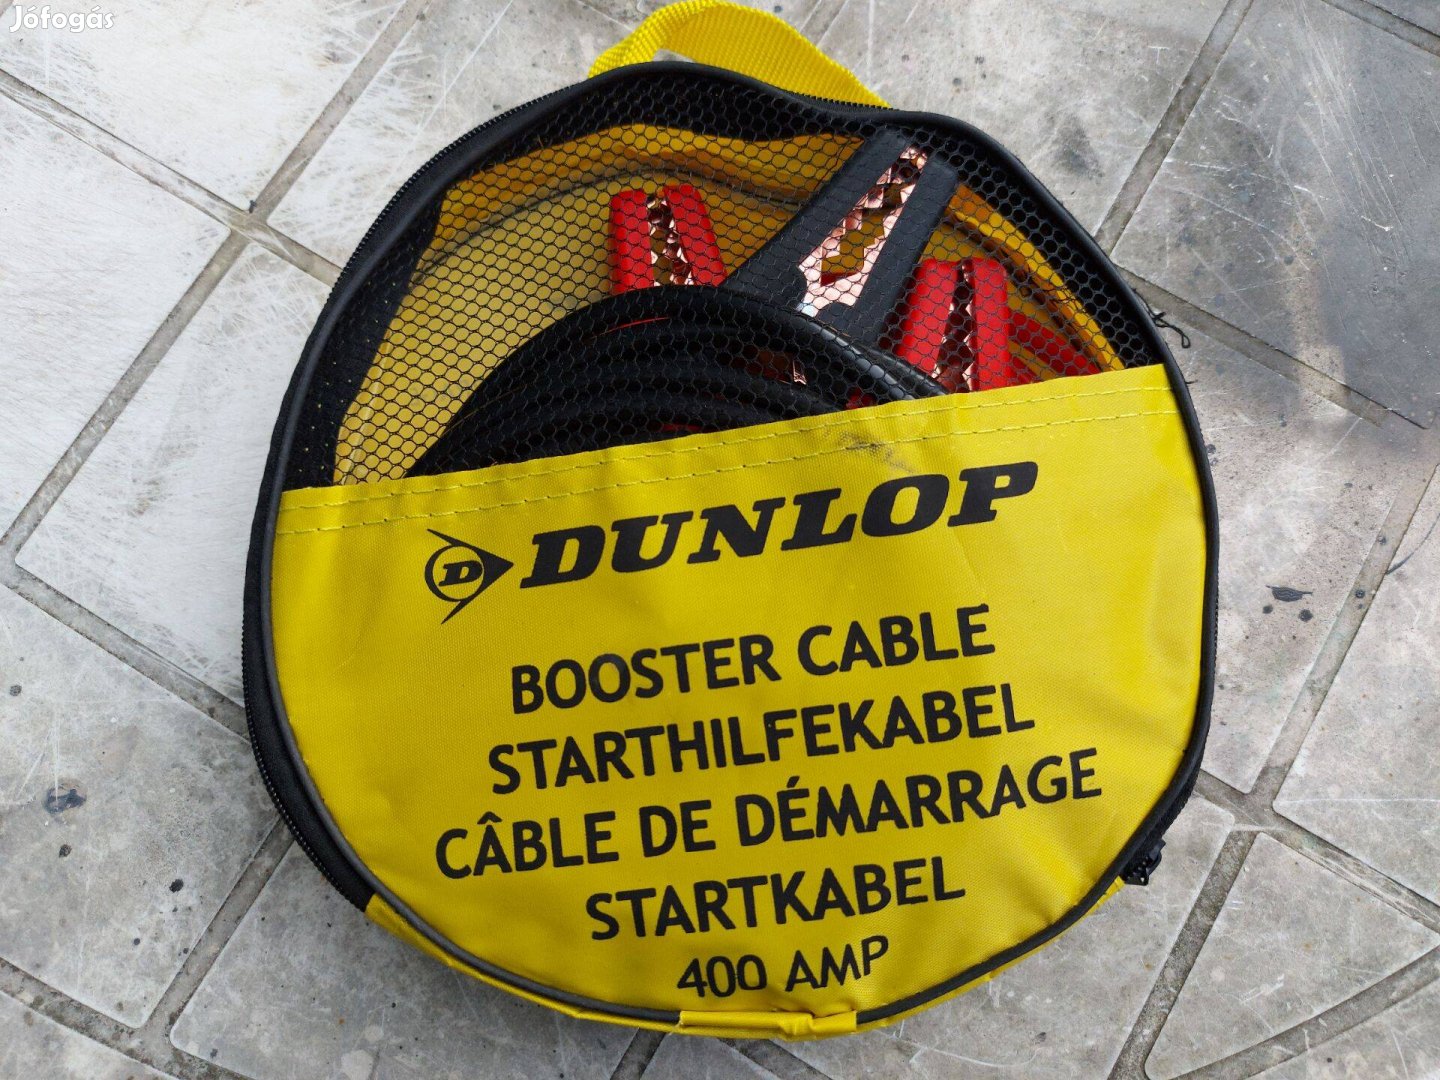 Dunlop inditó bika kábel eladó!